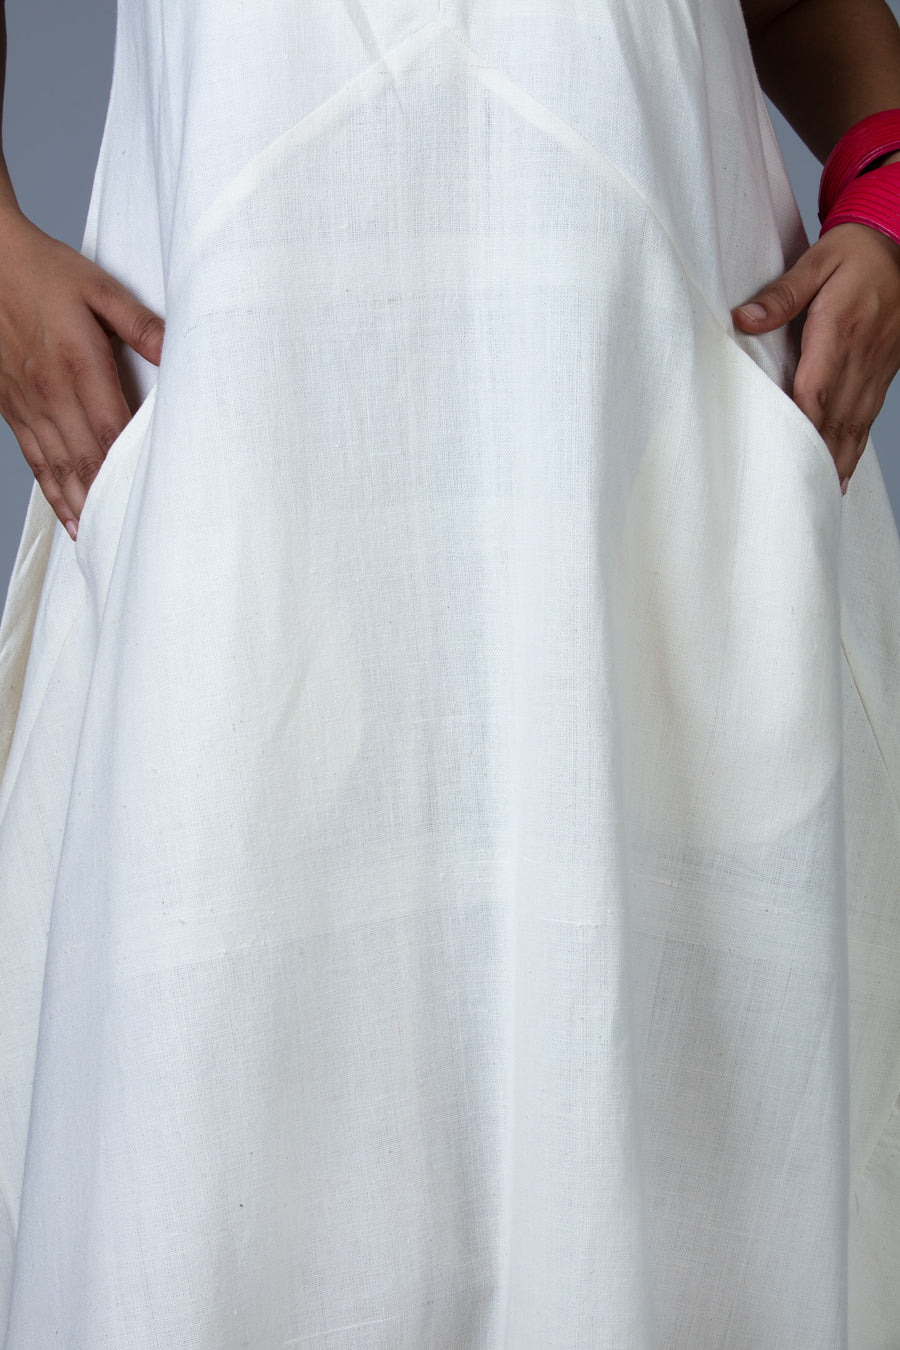 White Khadi Dress - INES - Upasana Design Studio